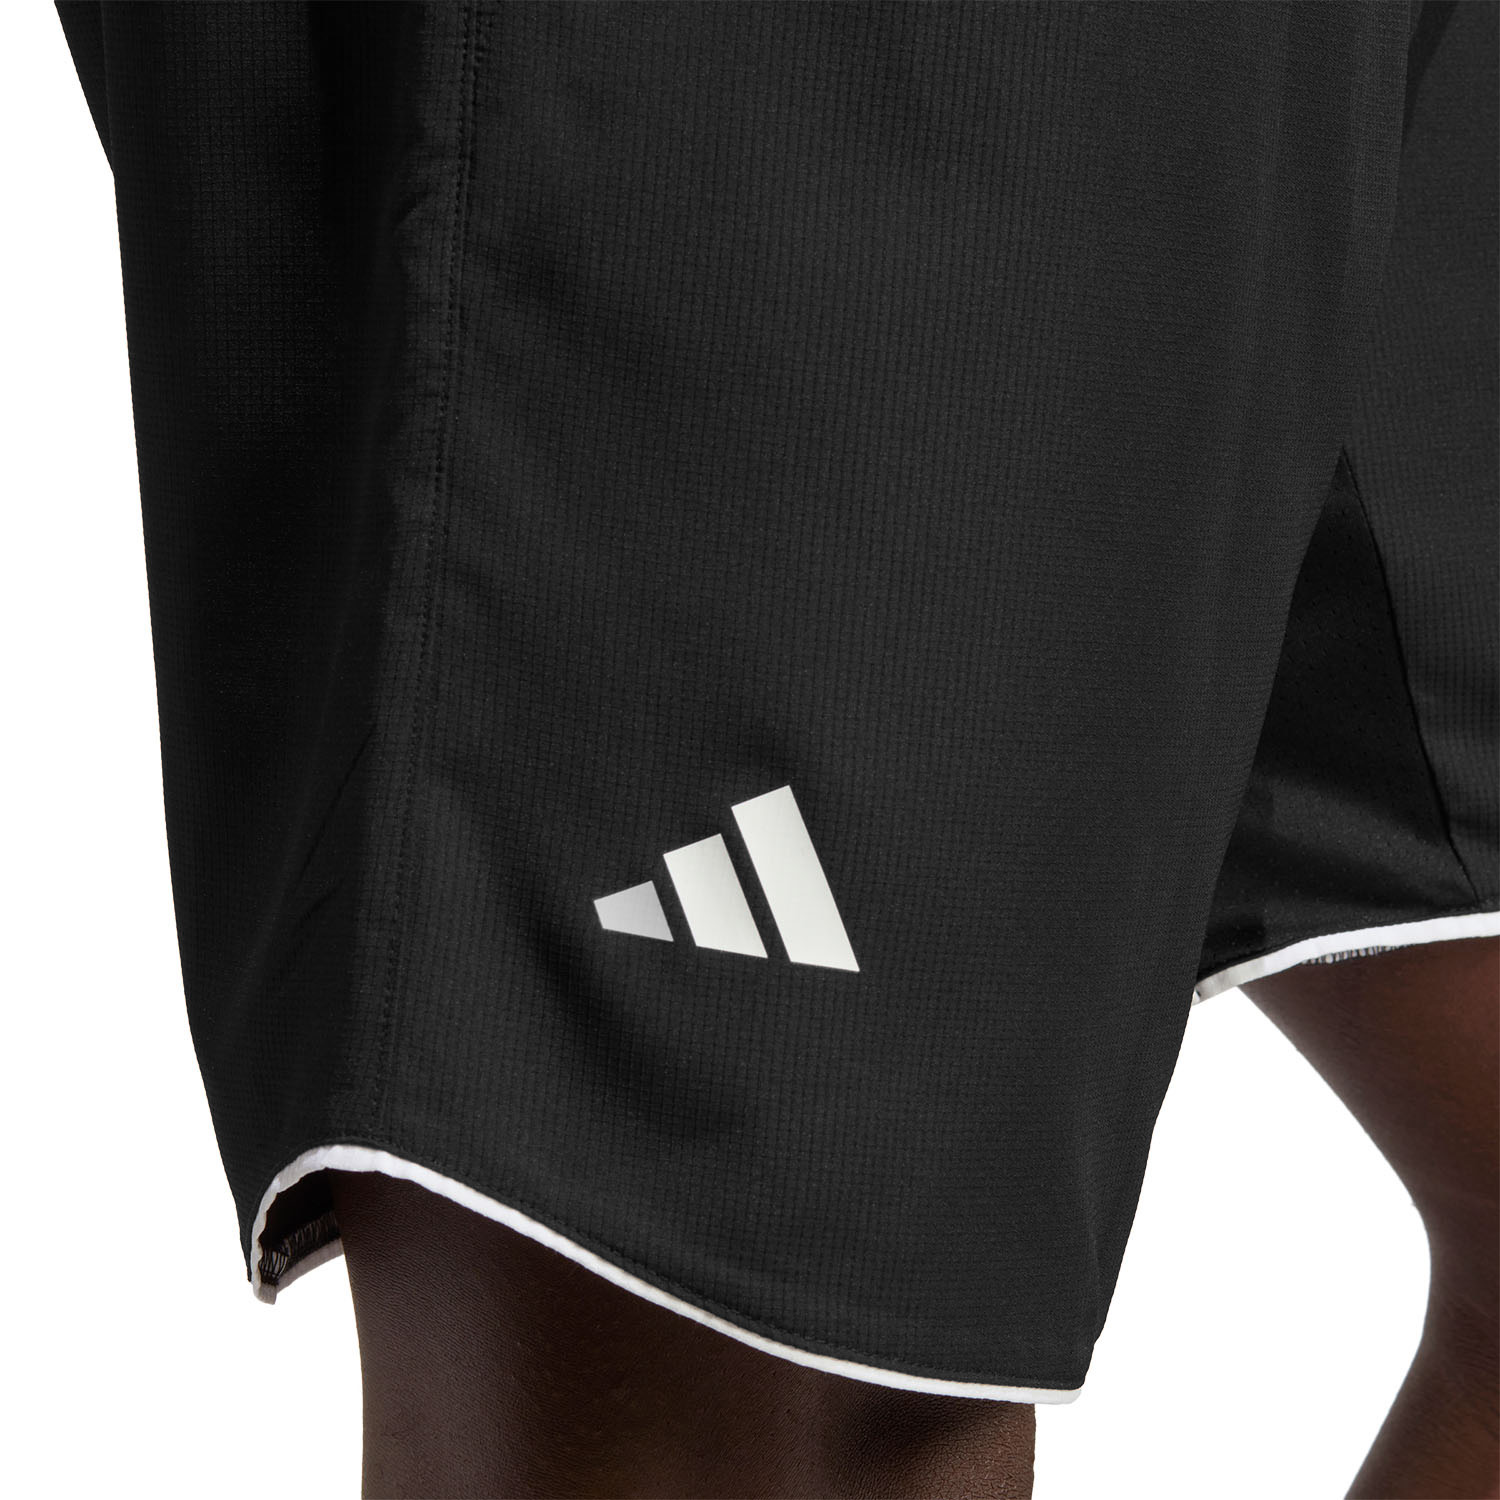 adidas Club 9in Shorts - Black